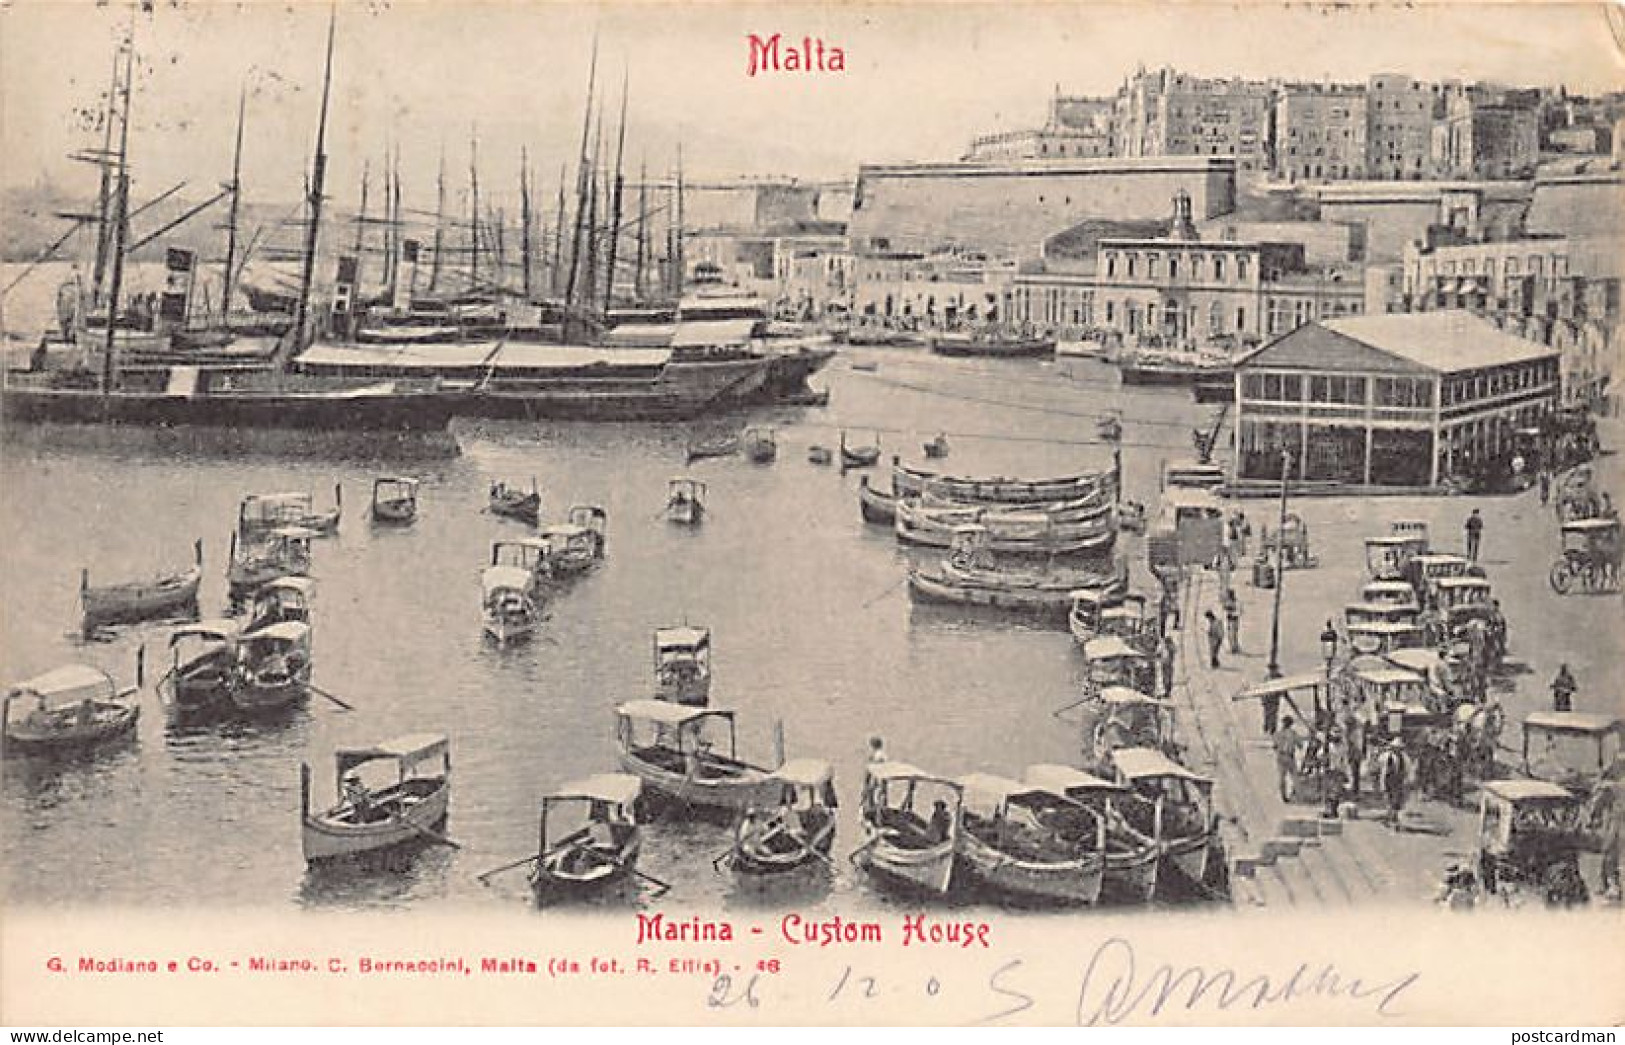 Malta - VALLETTA - Marina - Custom House - Publ. G. Modiano E Co. - C. Bornaccini 46 - Malta